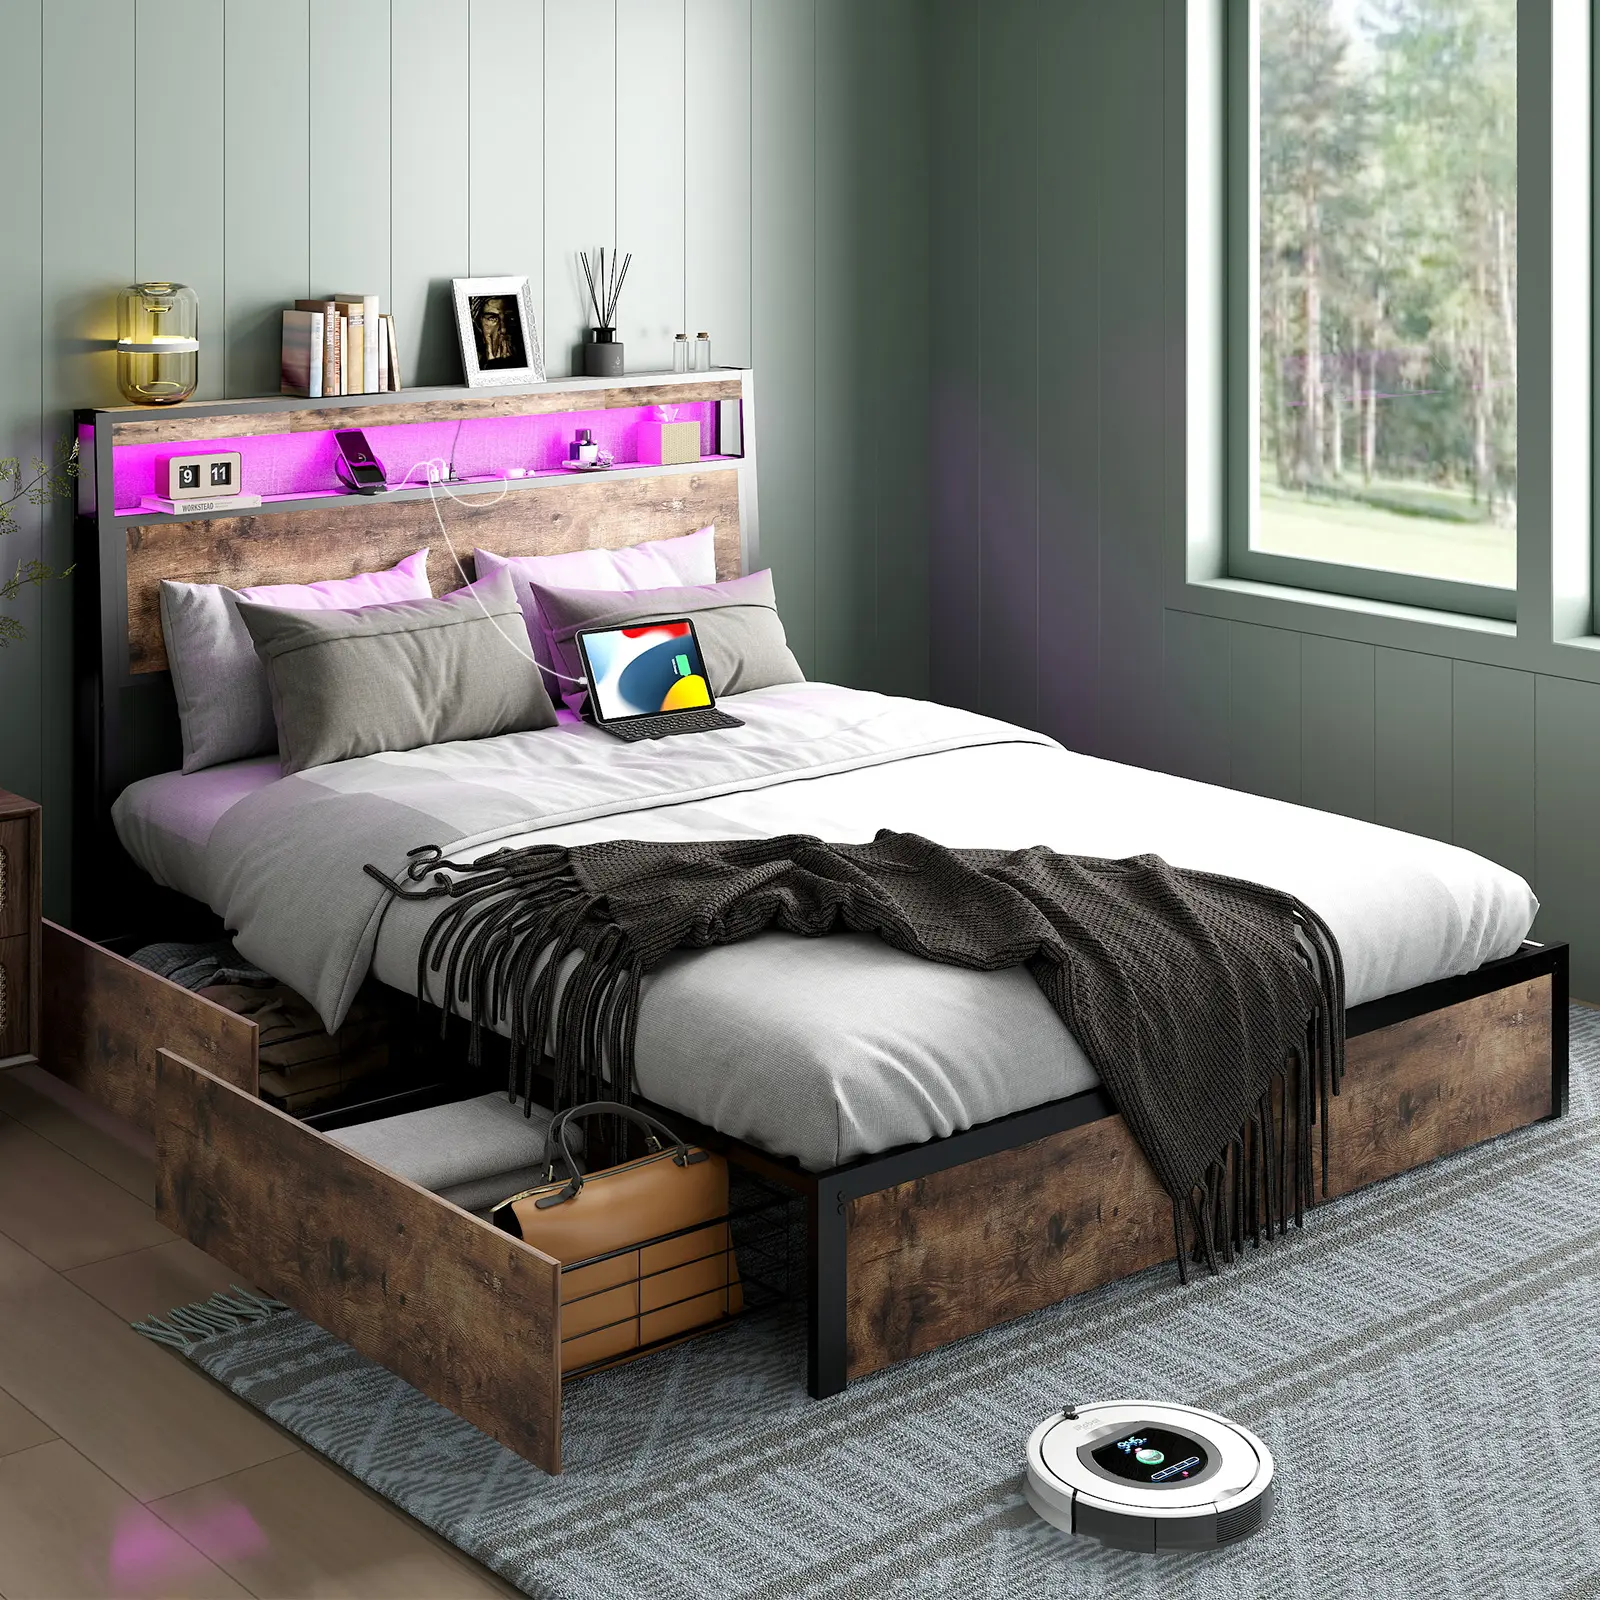 Полная металлическая кровать размера «King/ Queen-size» с подсветкой USB и RGB